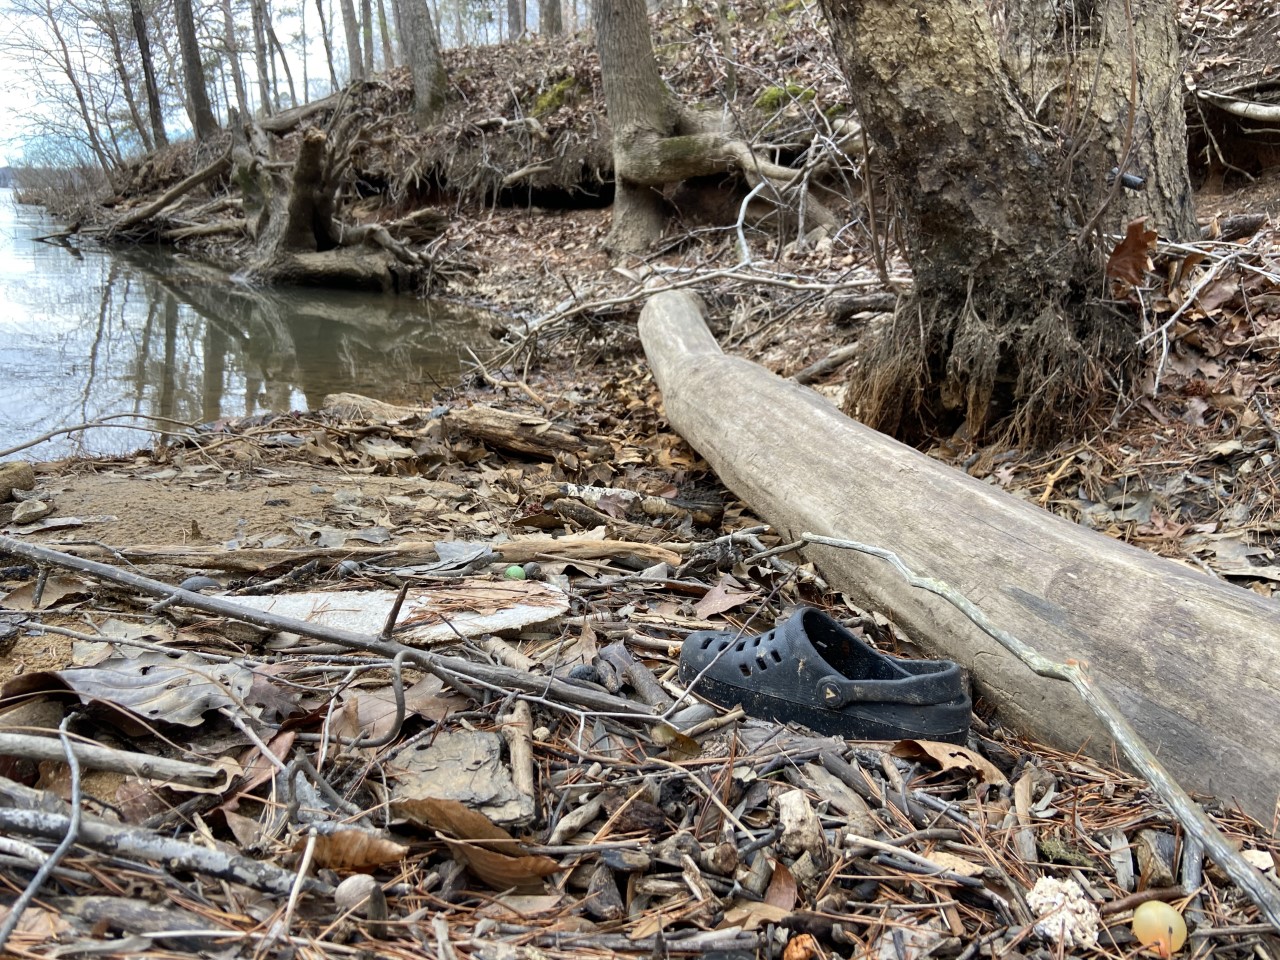 Shoe and trash along shoreline of Lake Lanier, Georgia